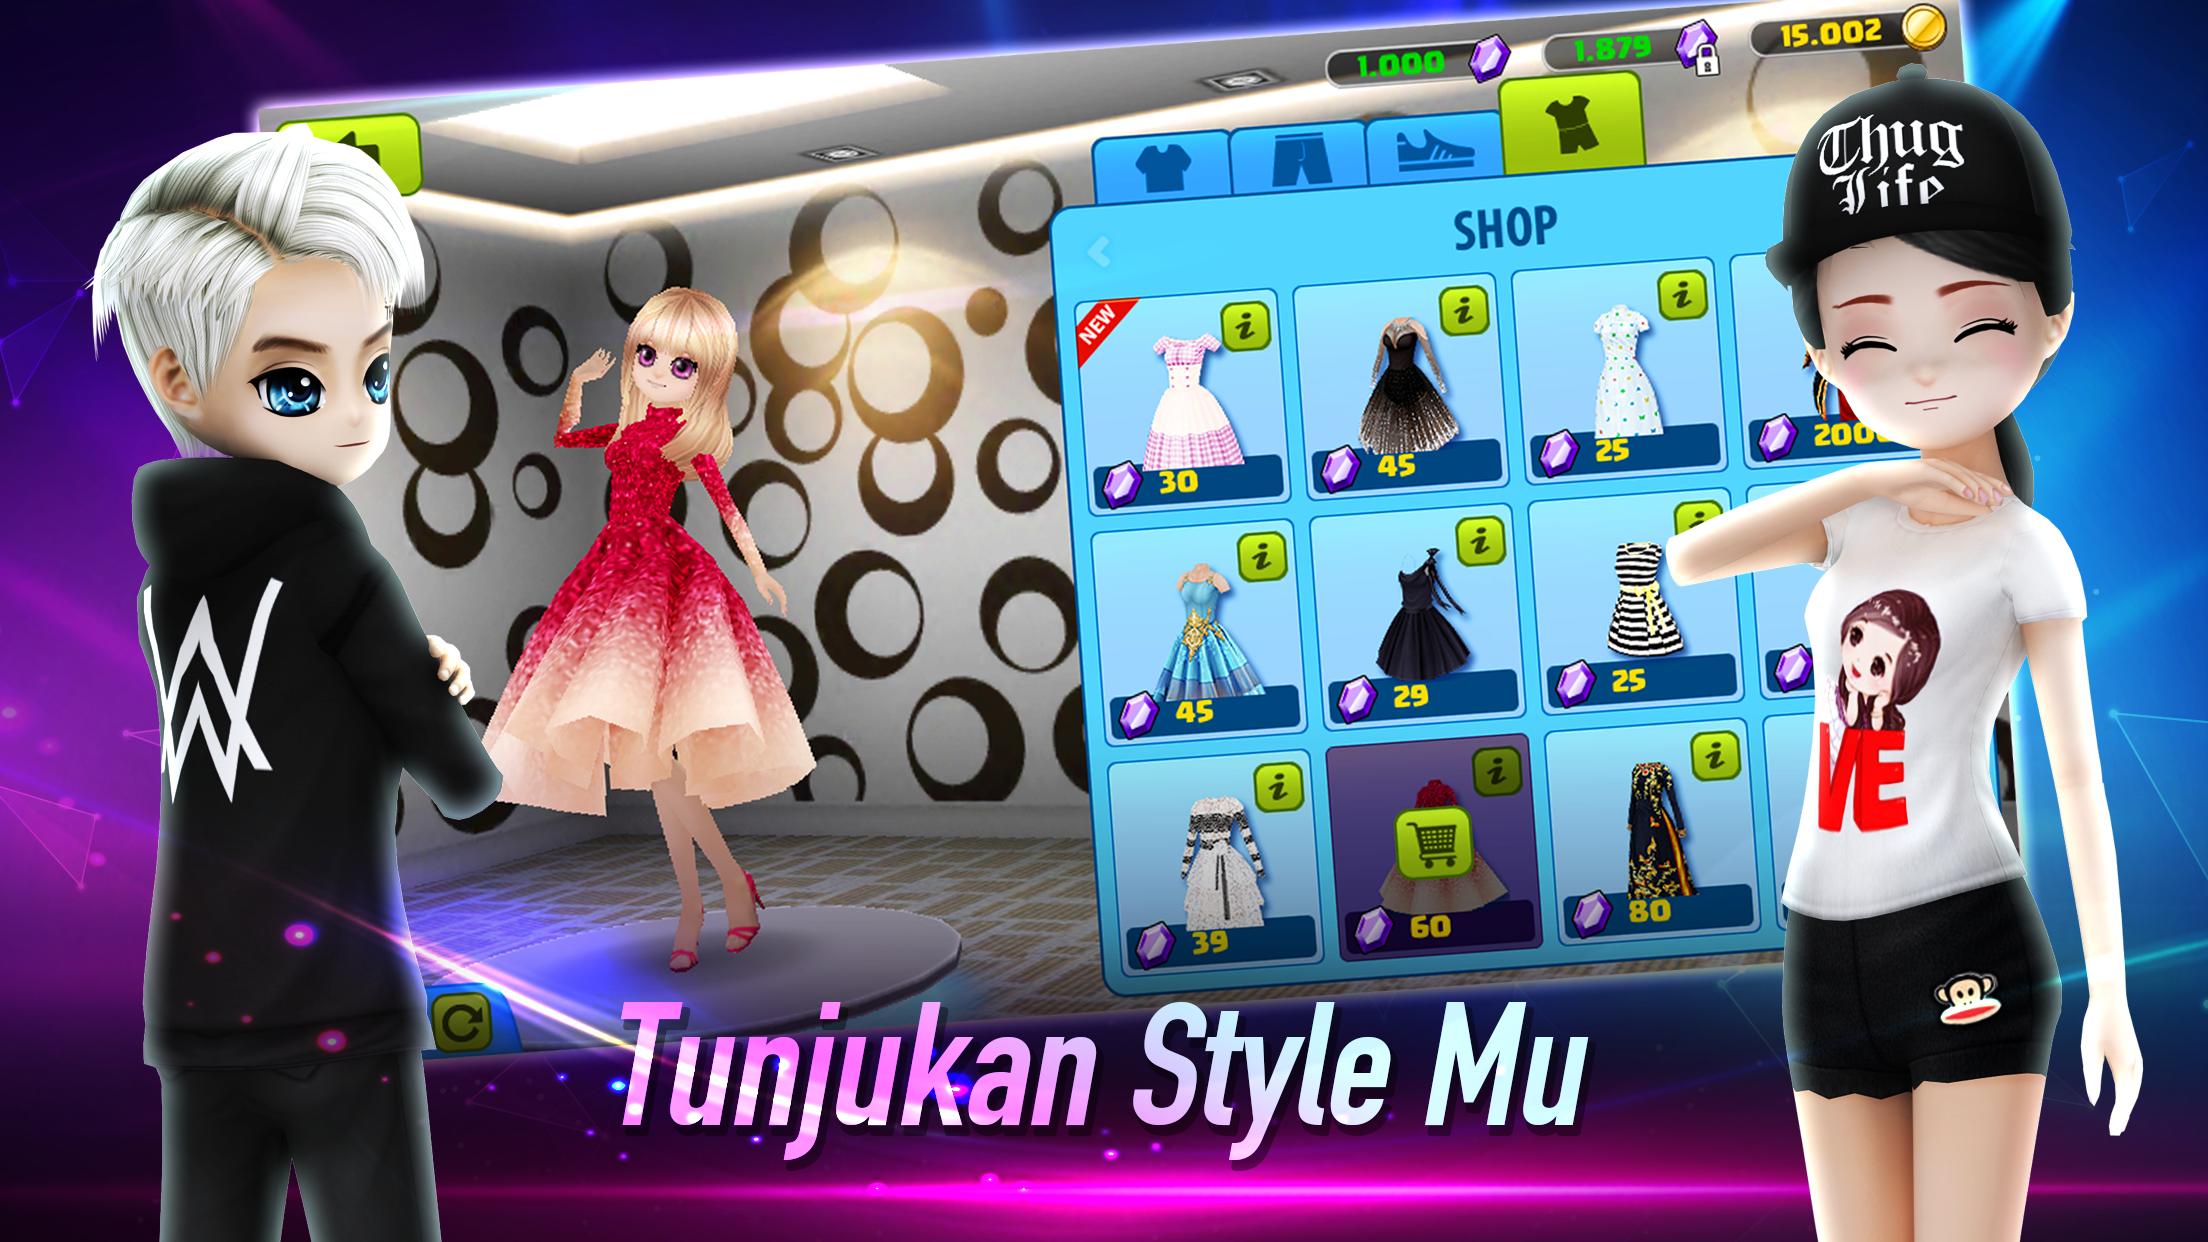 AVATAR MUSIK INDONESIA - Social Dancing Game 1.0.1 Screenshot 11